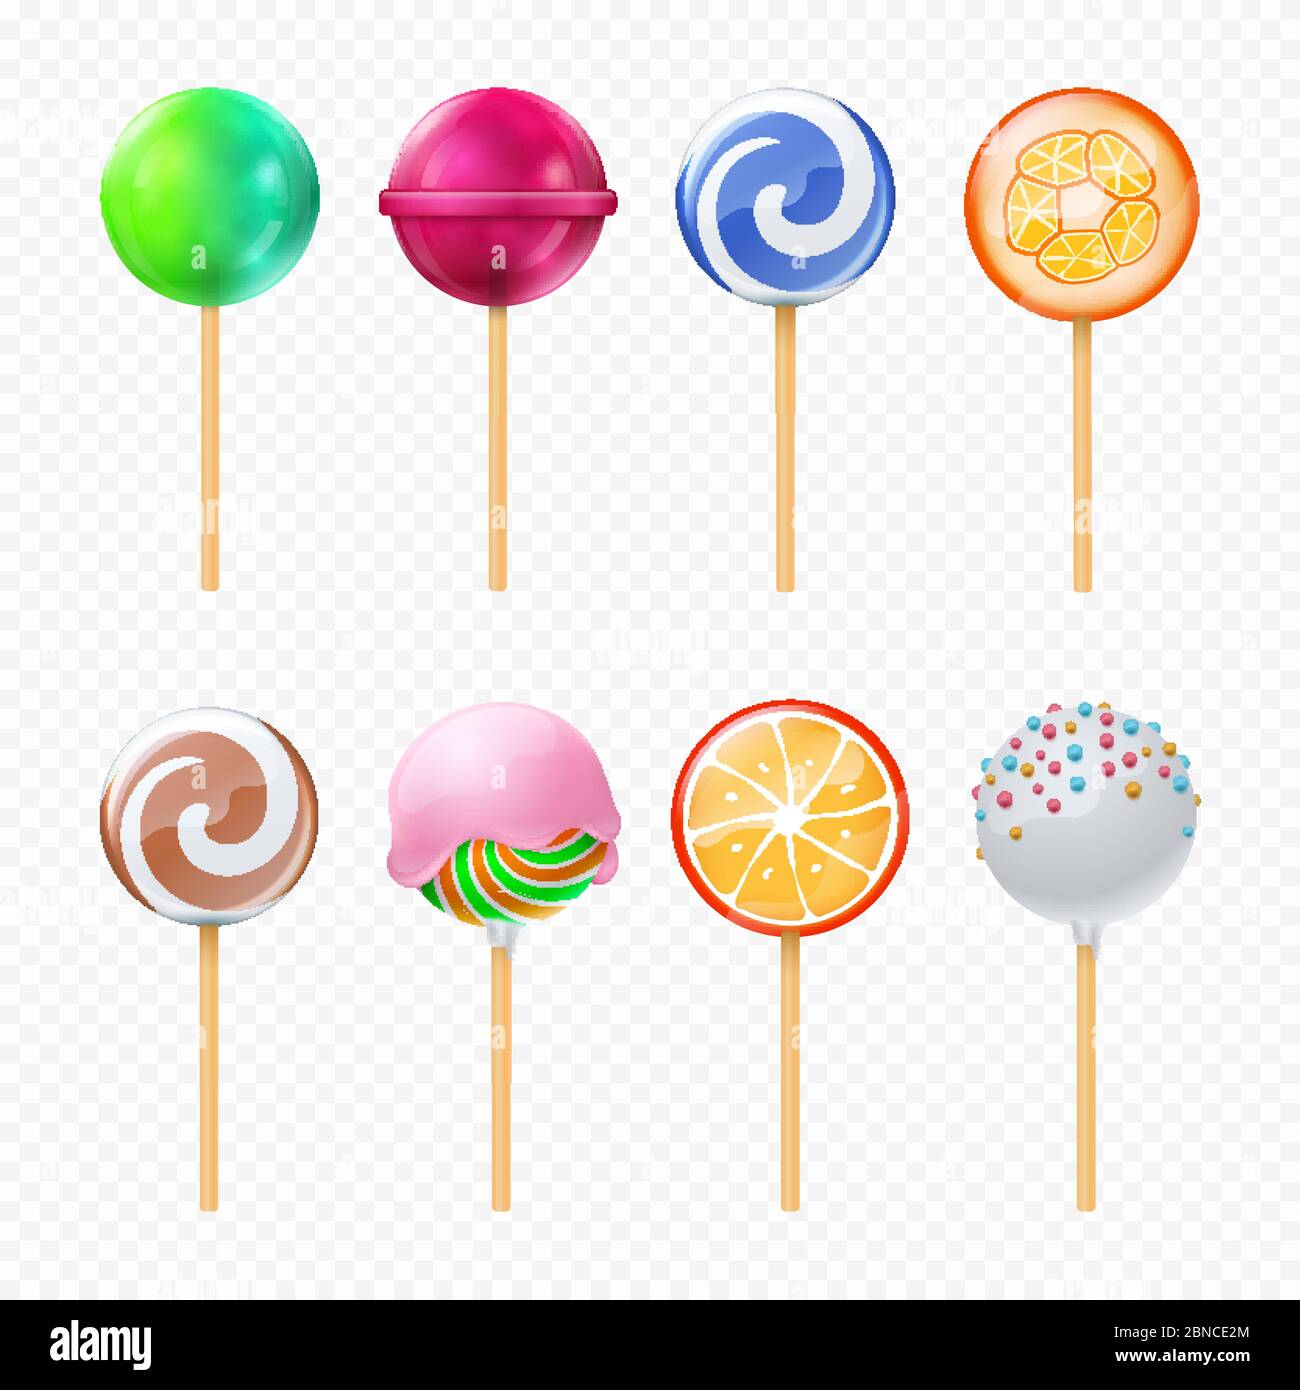 Lollipops vettore realistico isolato su sfondo trasparente. Illustrazione della yummy caramello, collezione di spirali forma colorata Illustrazione Vettoriale